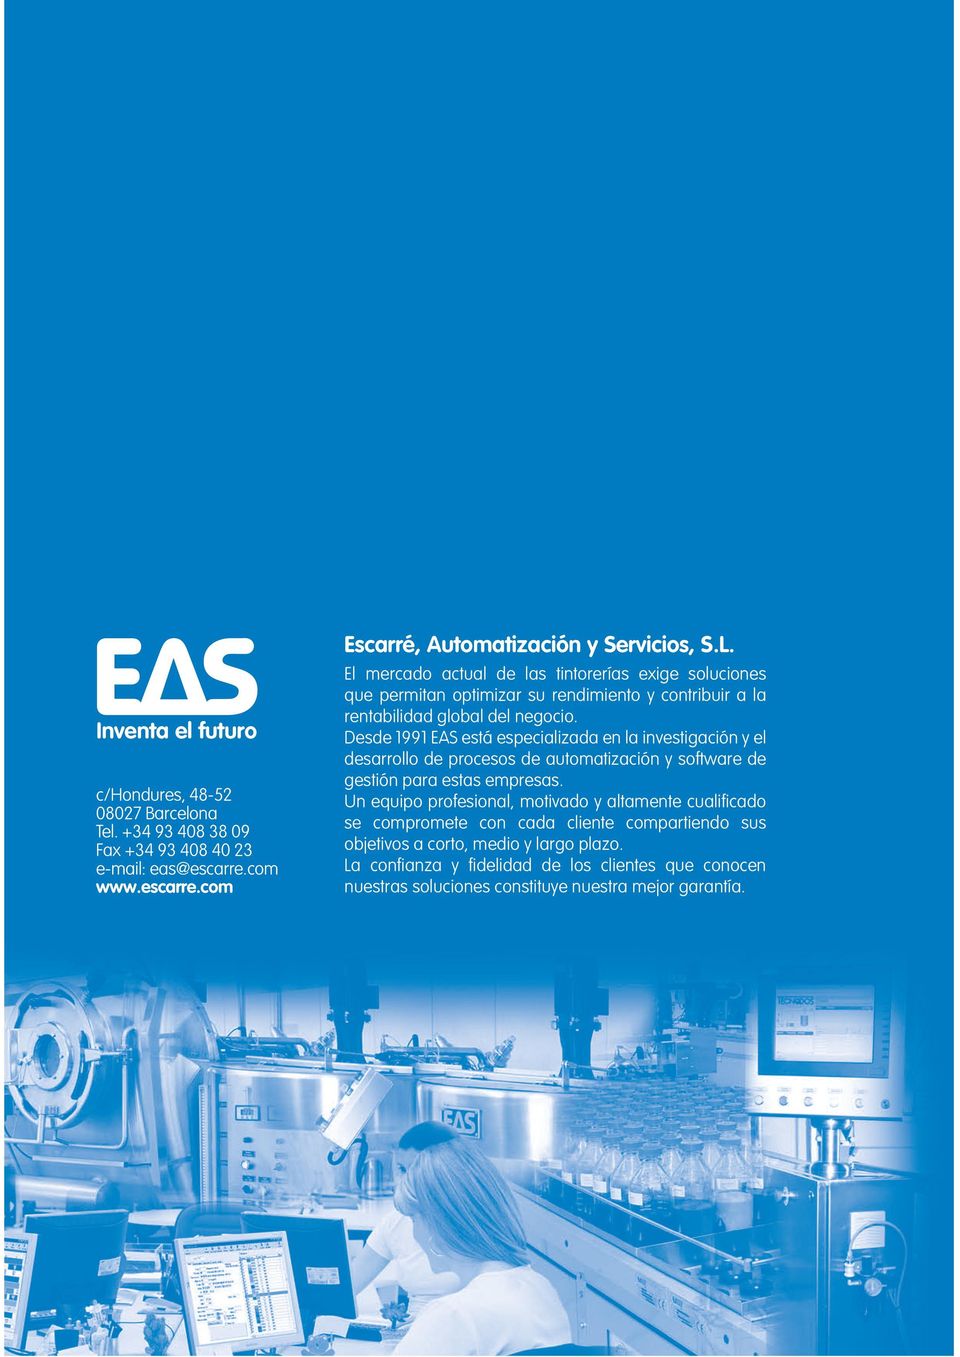 Desde 1991 EAS está especializada en la investigación y el desarrollo de procesos de automatización y software de gestión para estas empresas.